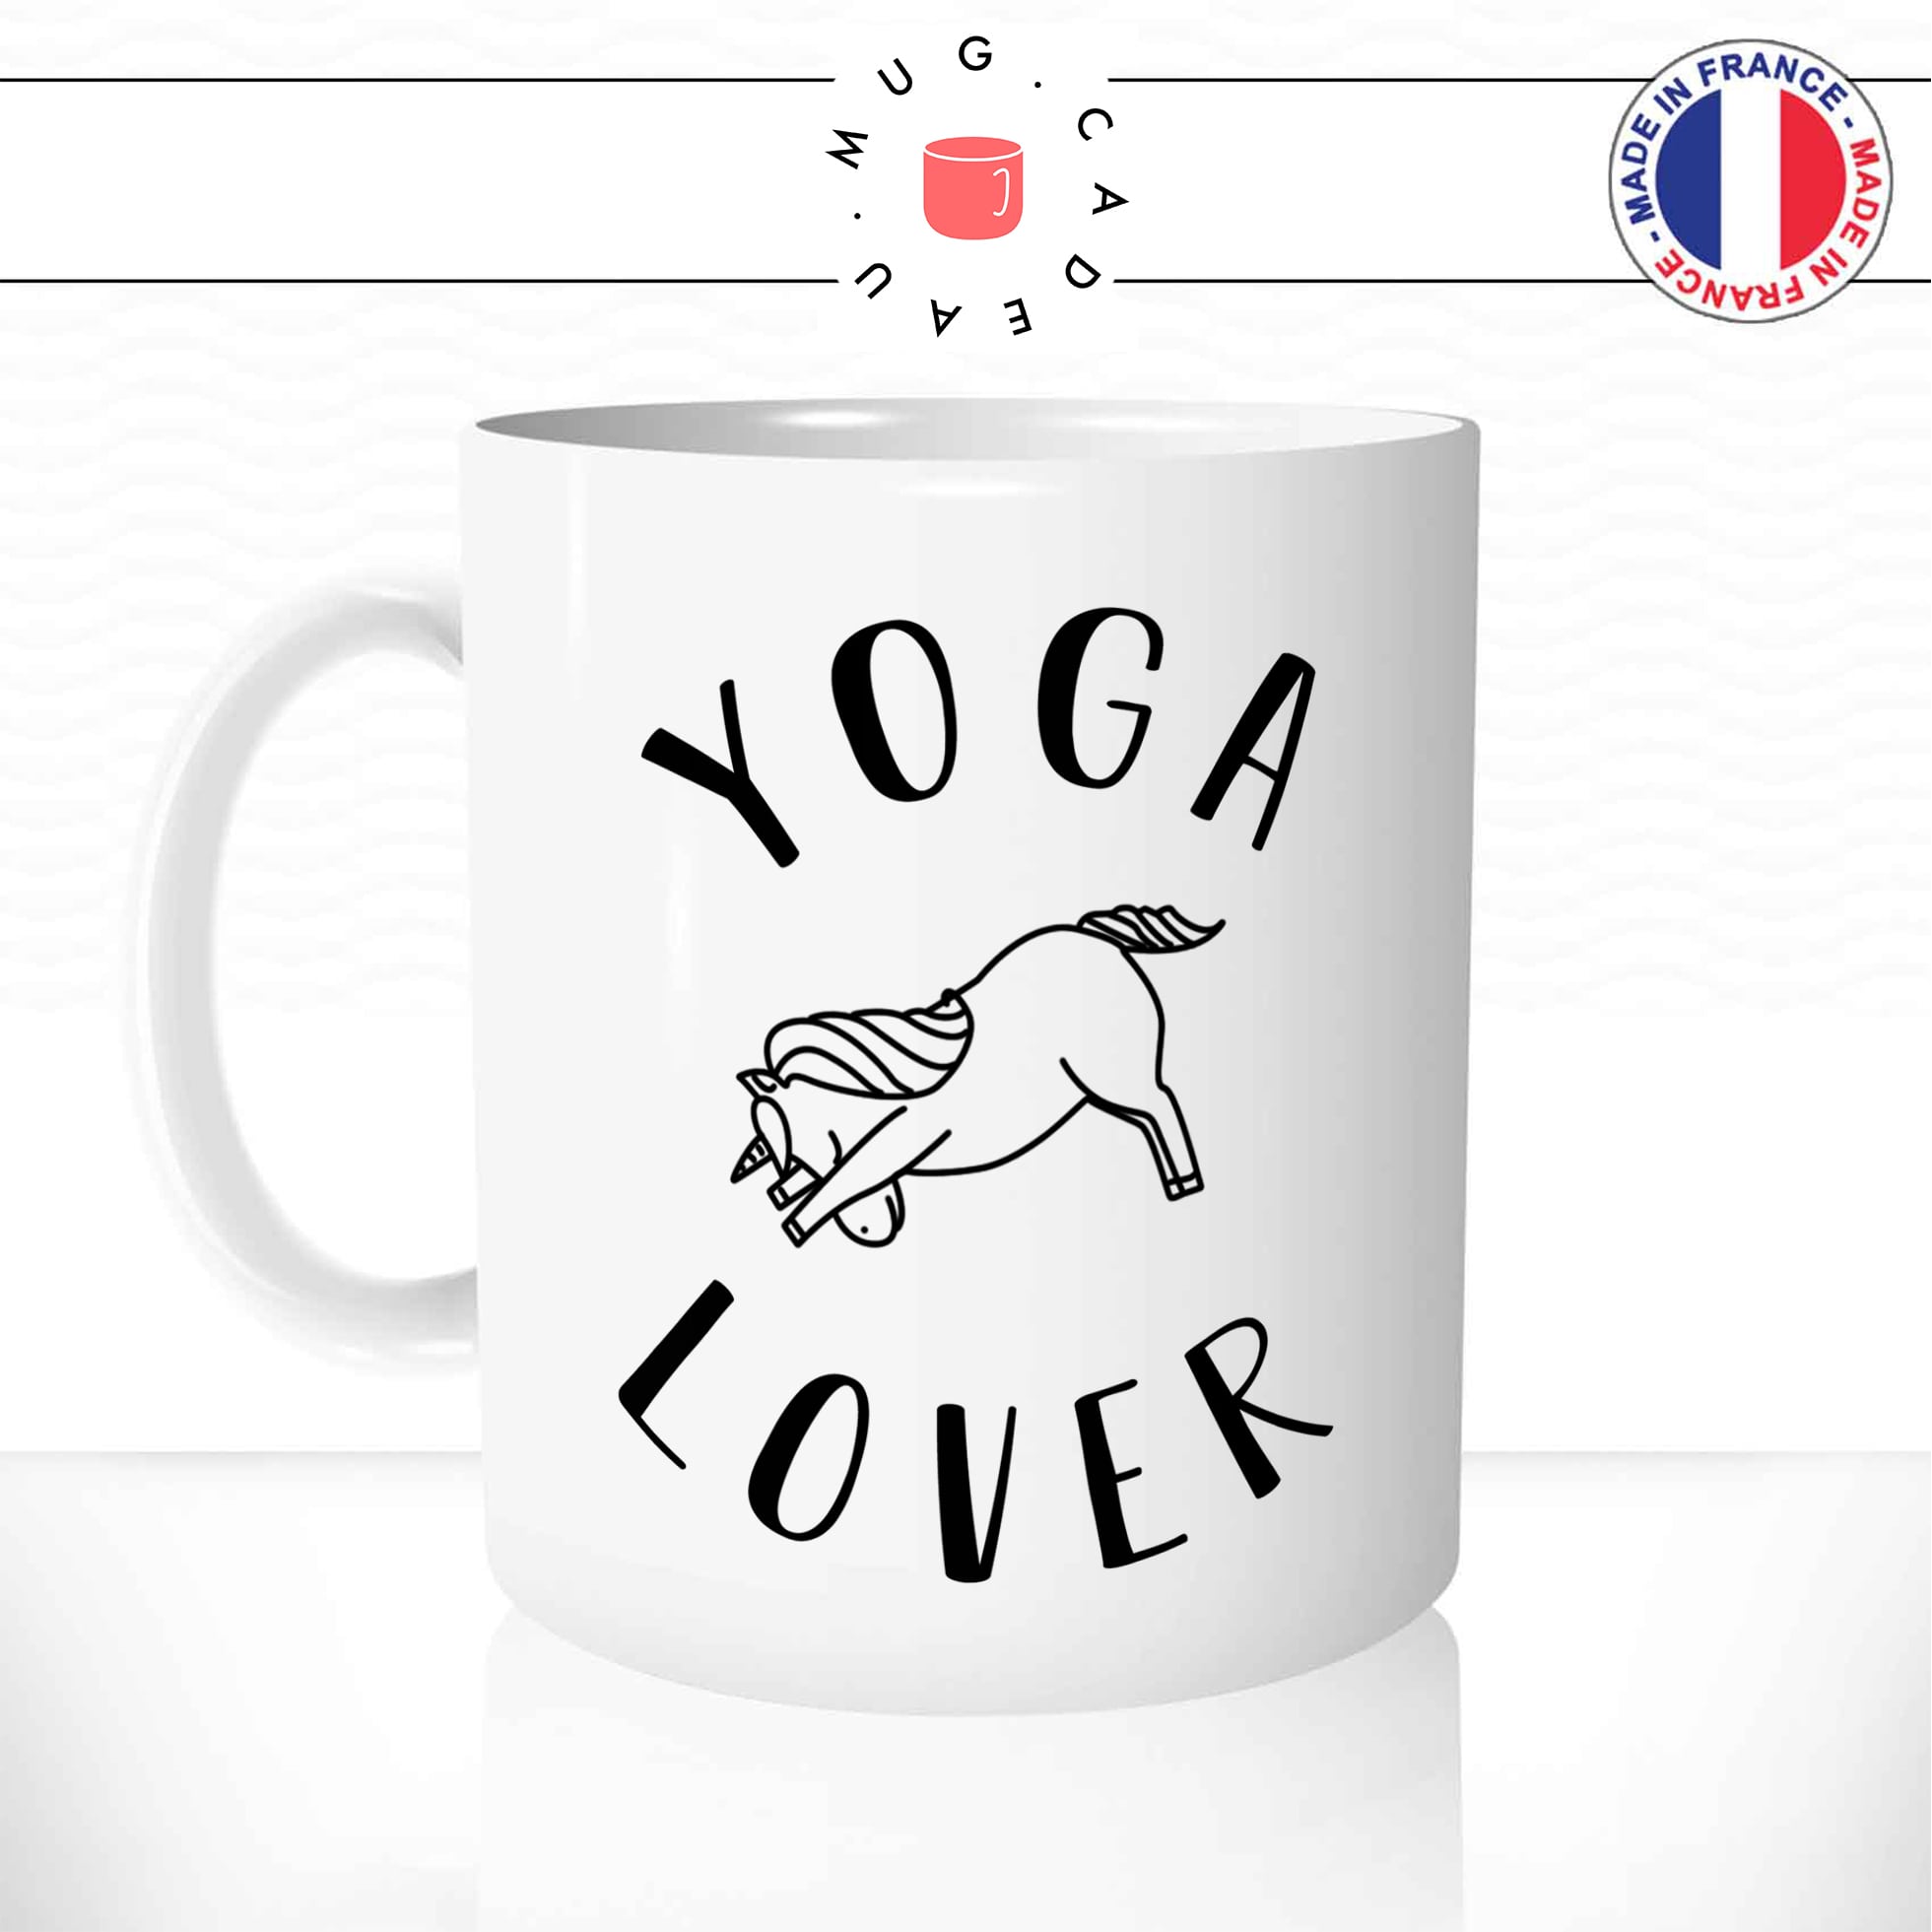 mug-tasse-yoga-lover-licorne-sport-namasté-chien-tete-en-bas-fun-humour-original-mugs-tasses-café-thé-idée-cadeau-personnalisée-min